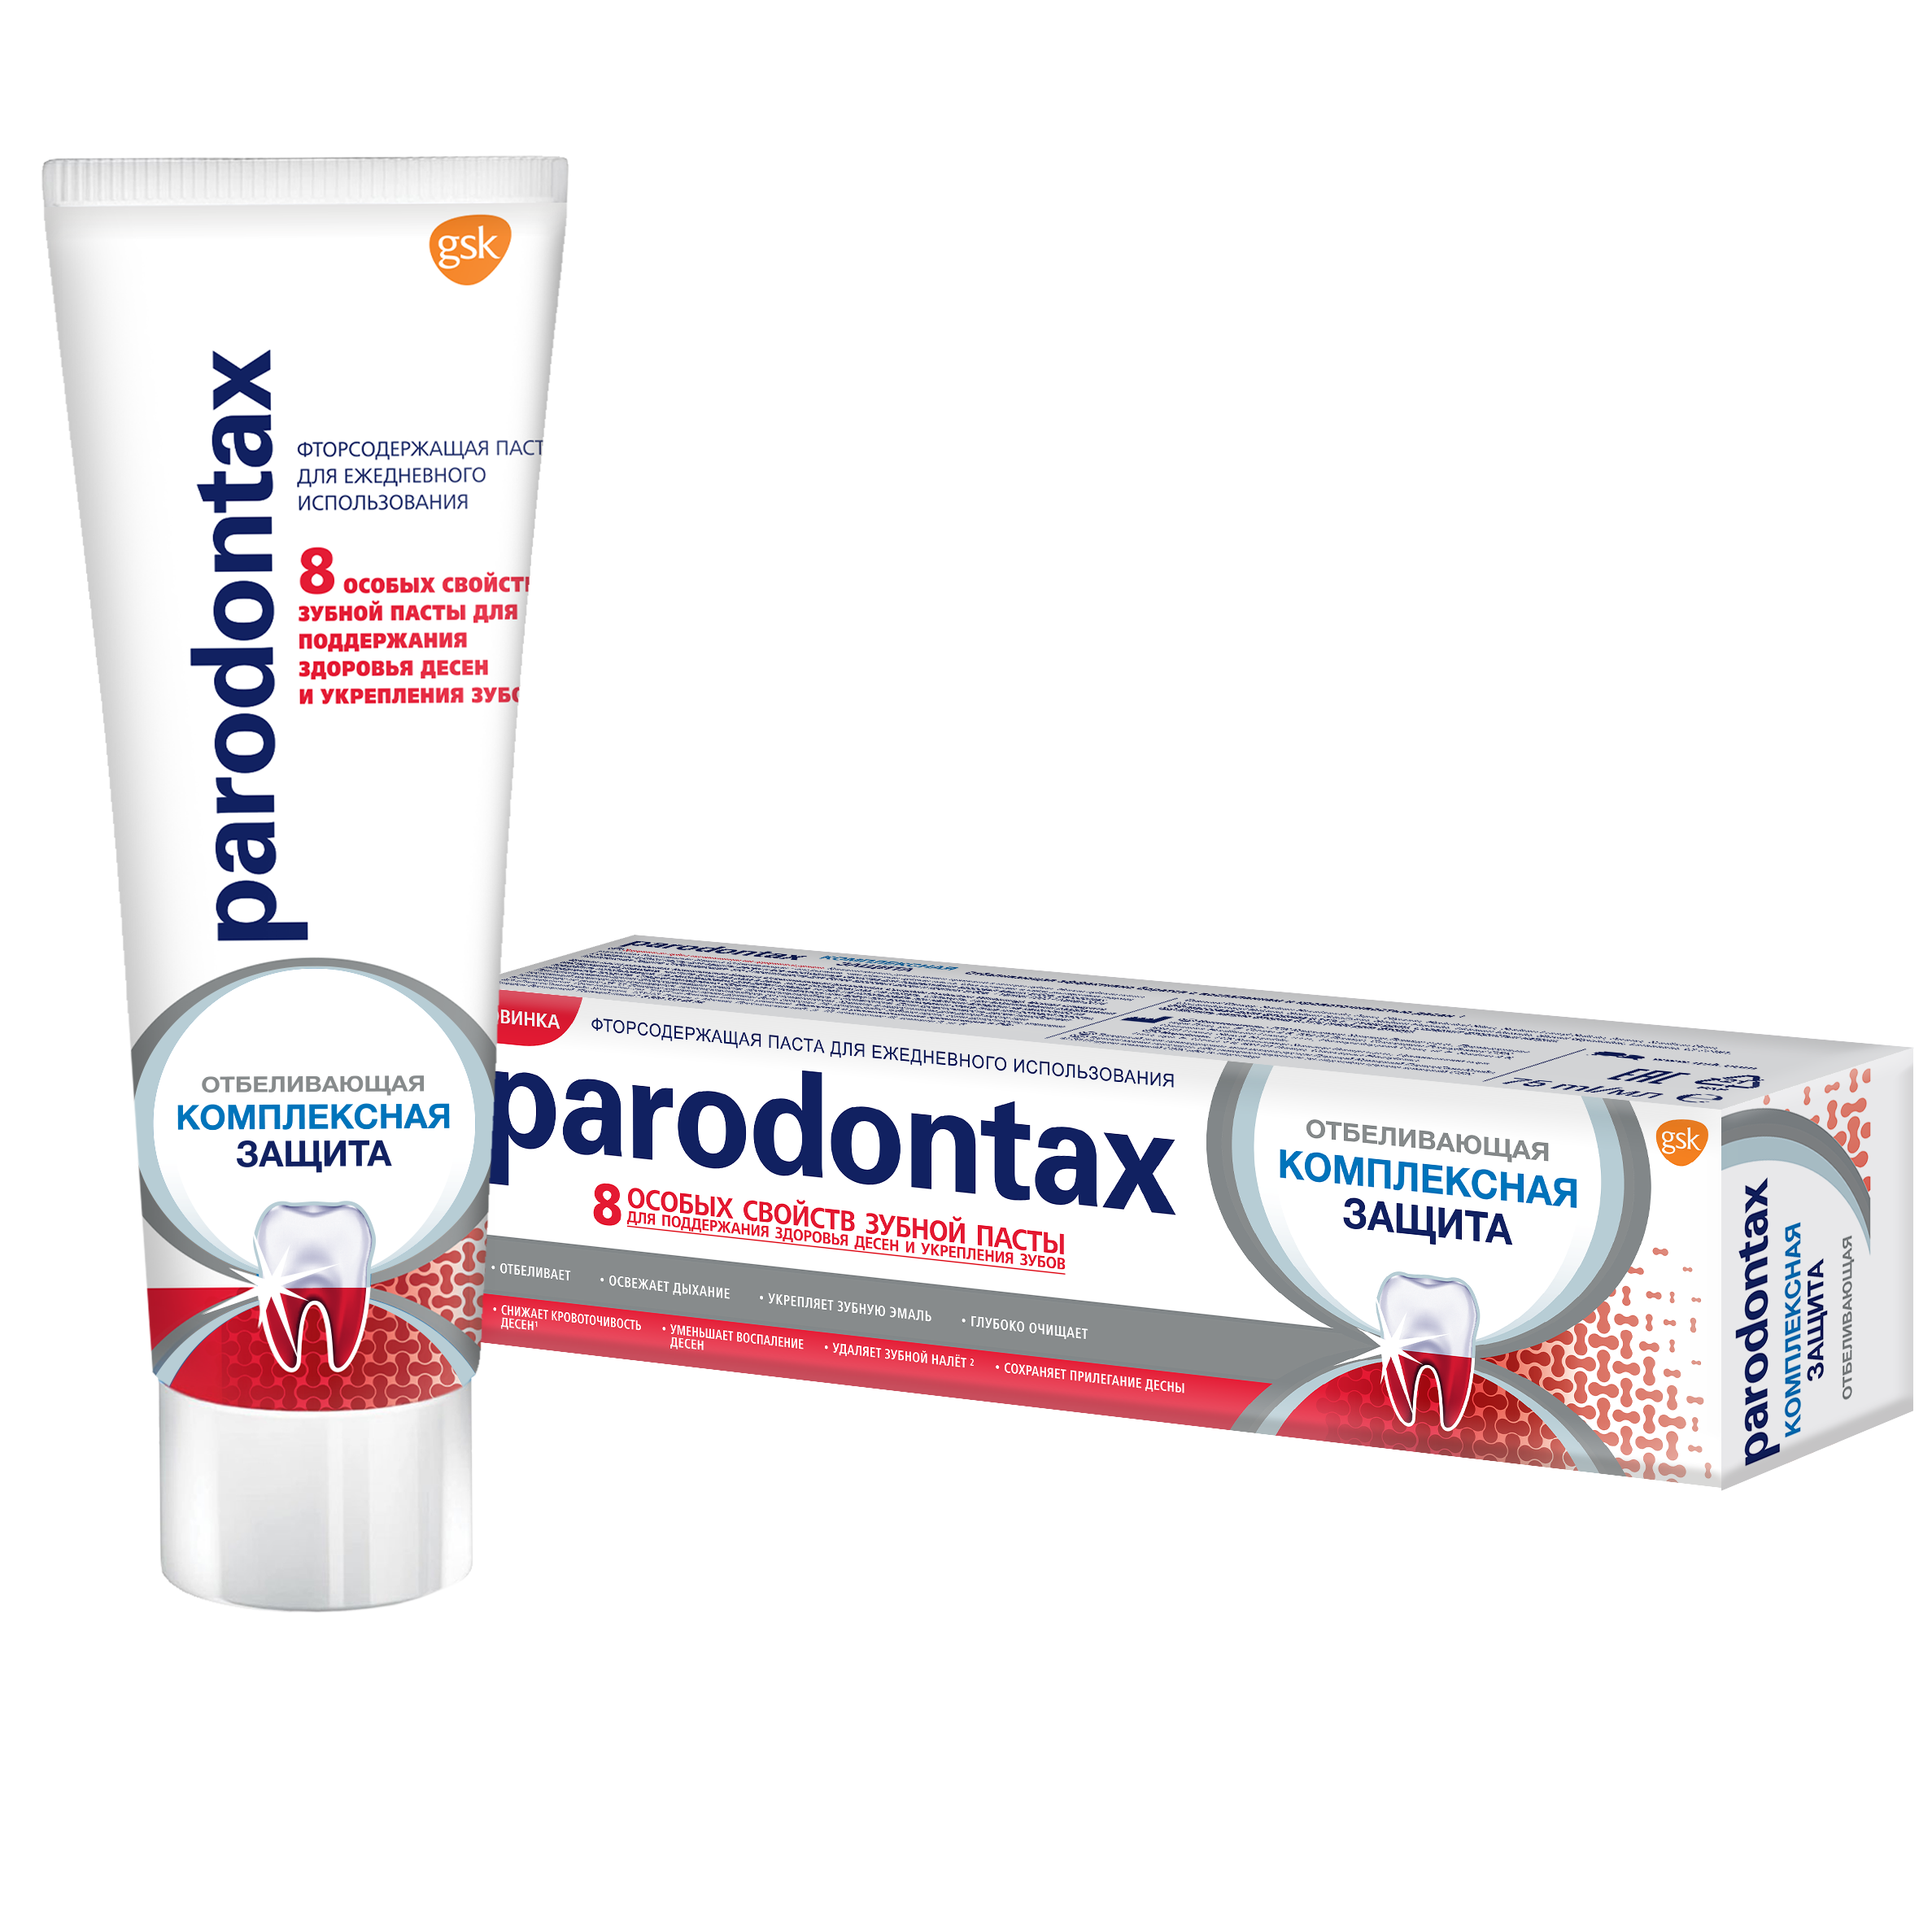 Зубная паста Parodontax Комплексная защита Отбеливающая, 75 мл - фото 6